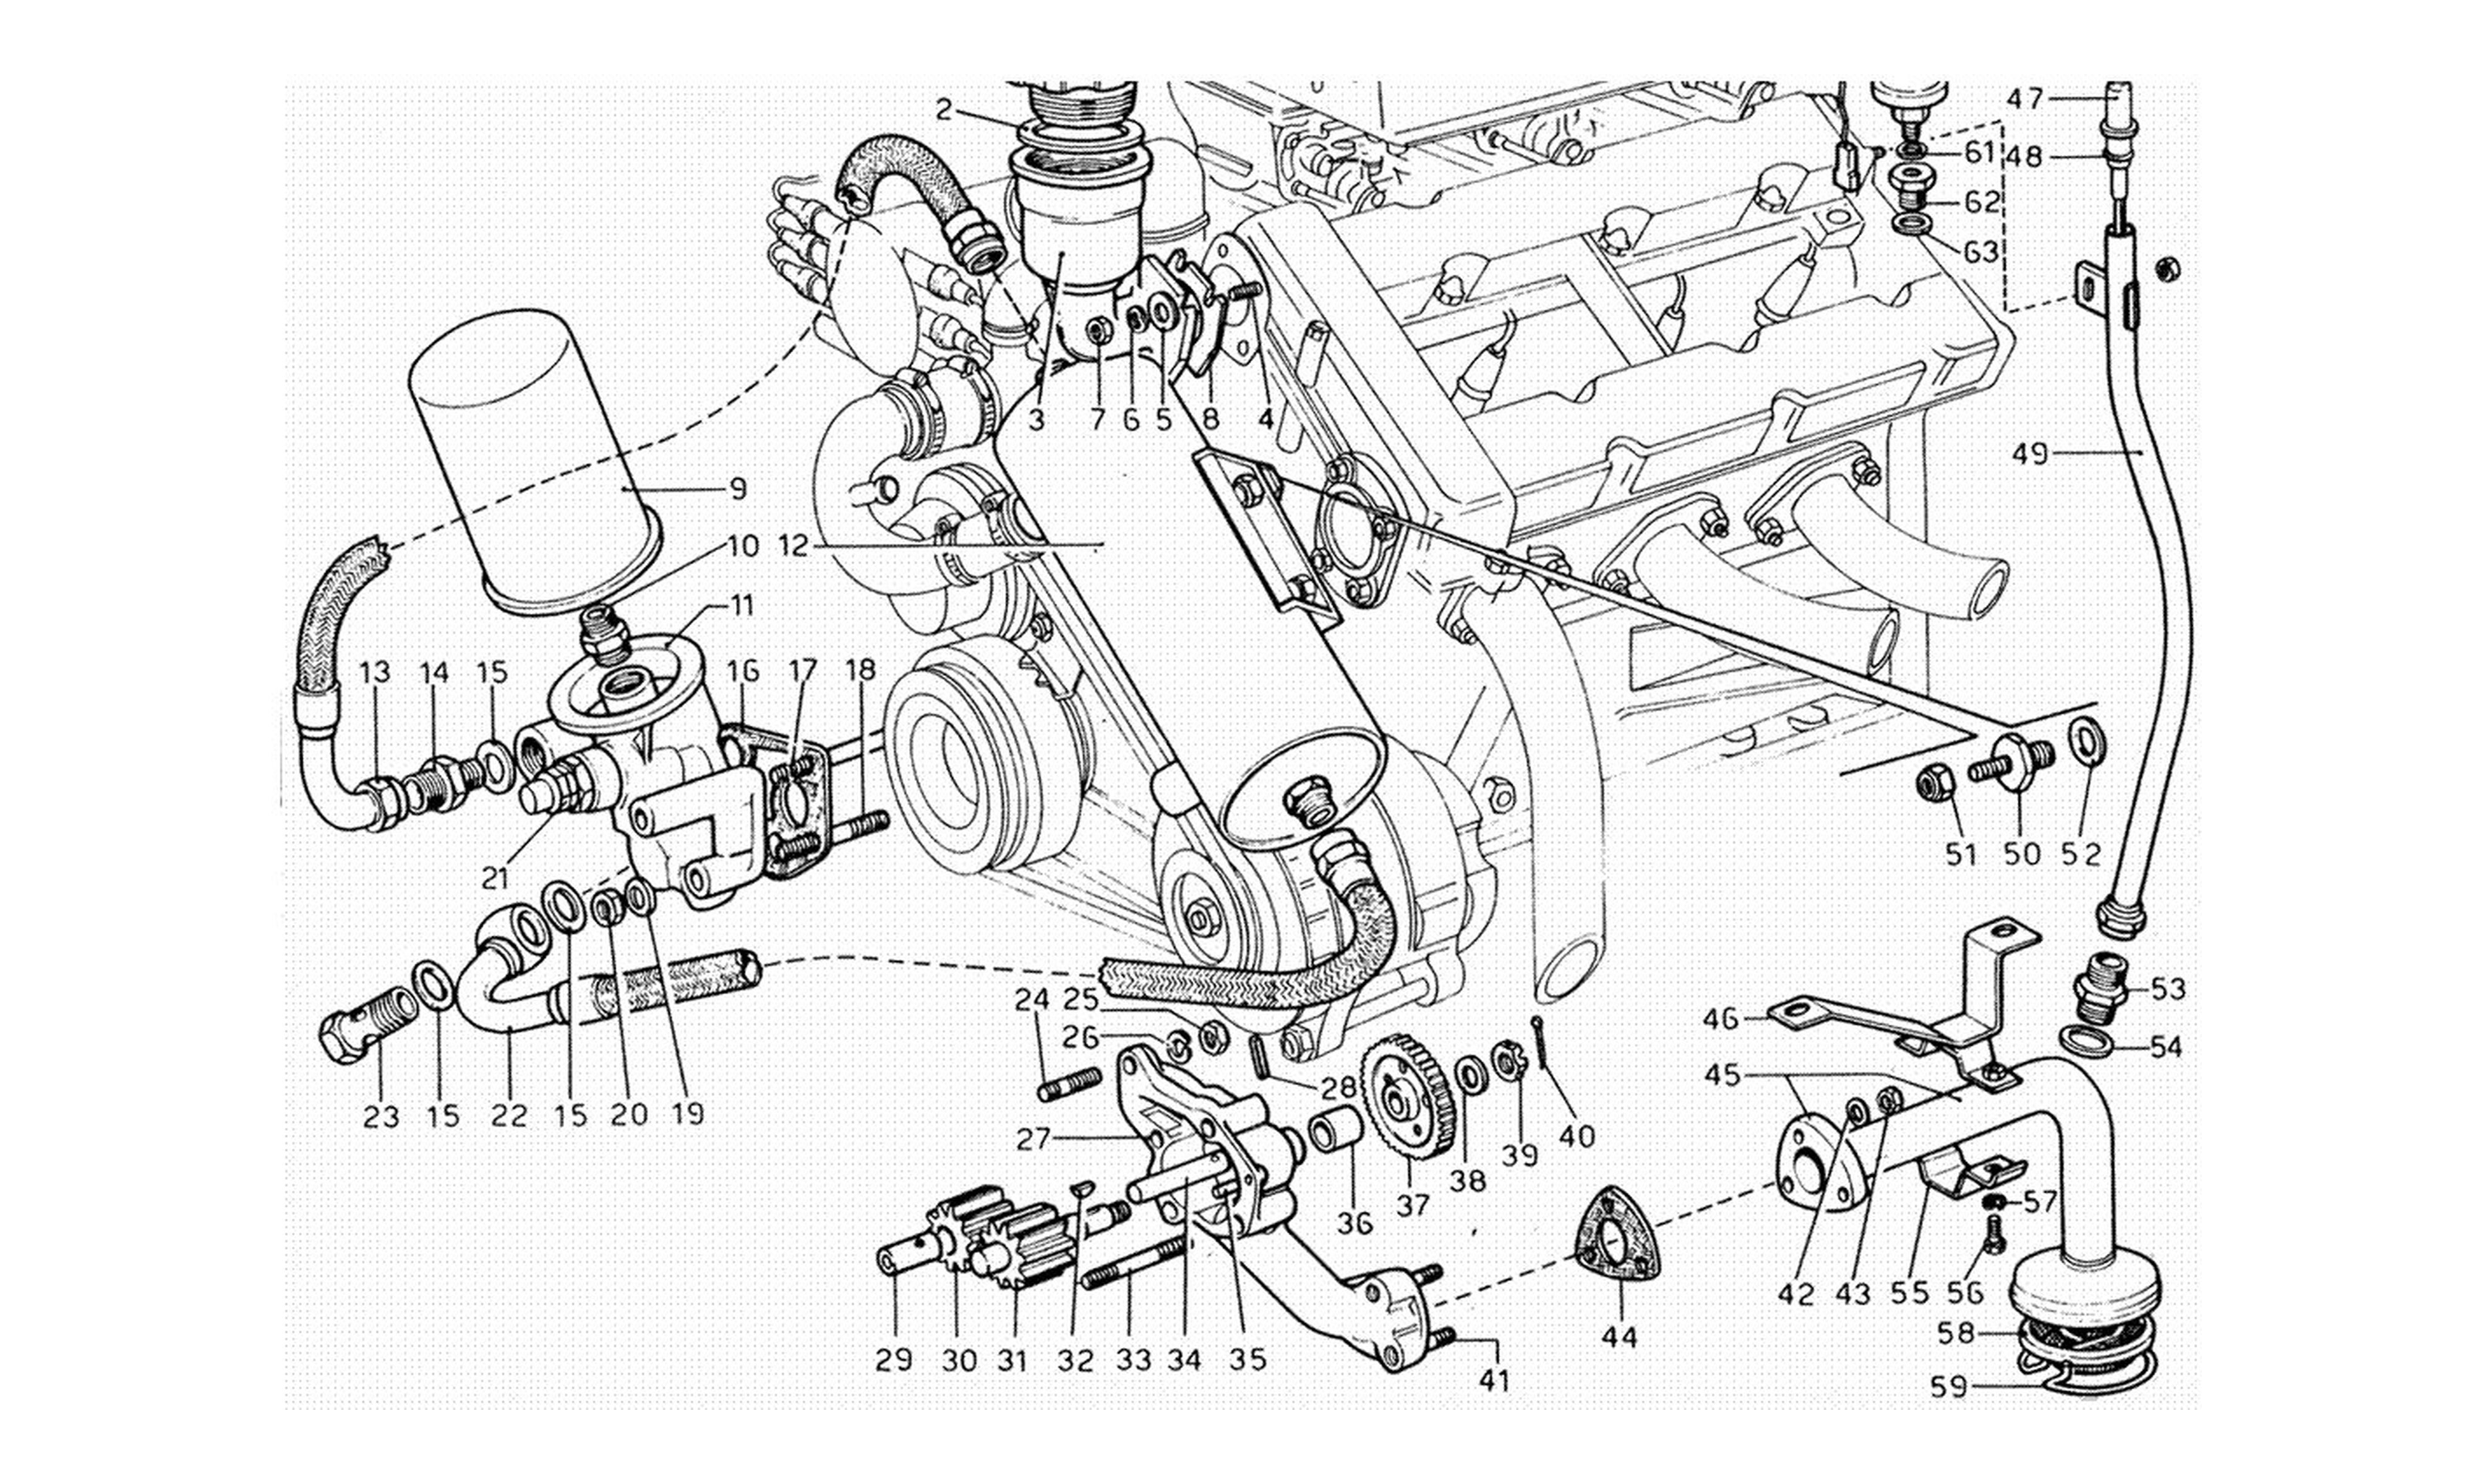 Schematic: Engine Lubrication